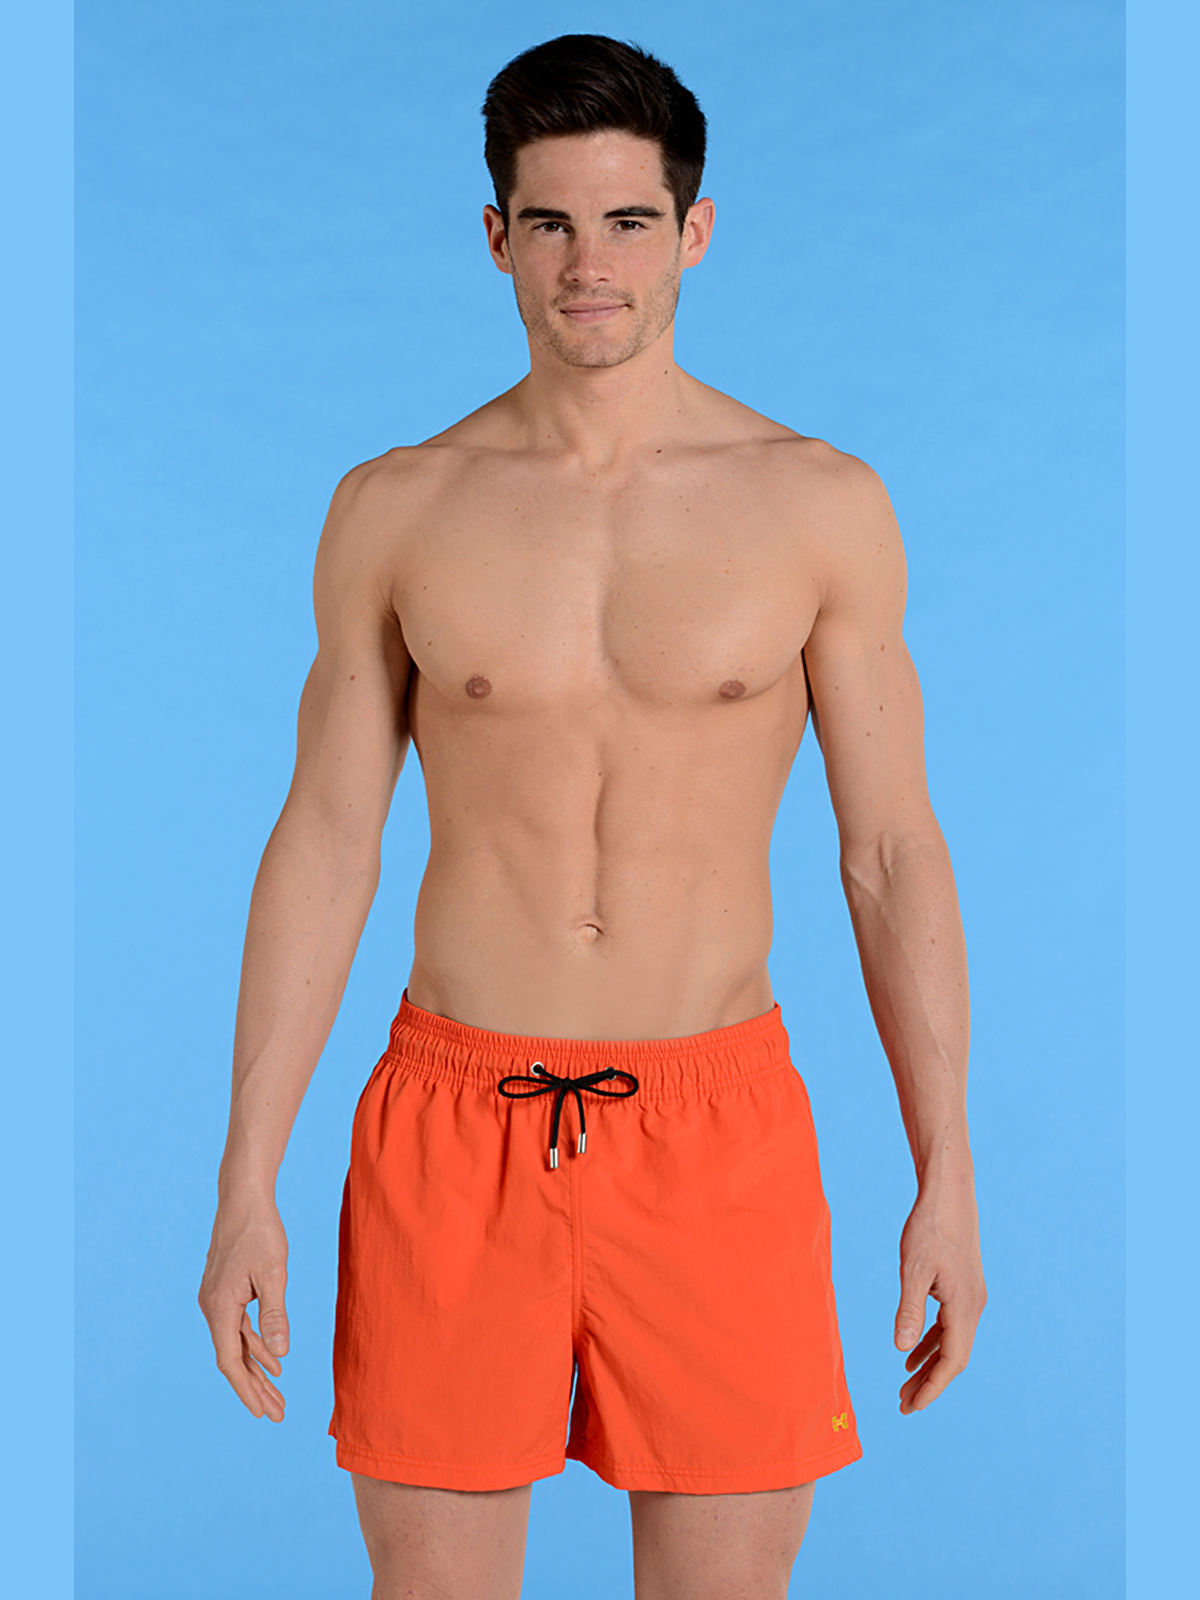 пляжные шорты HOM 07470 оранжевые